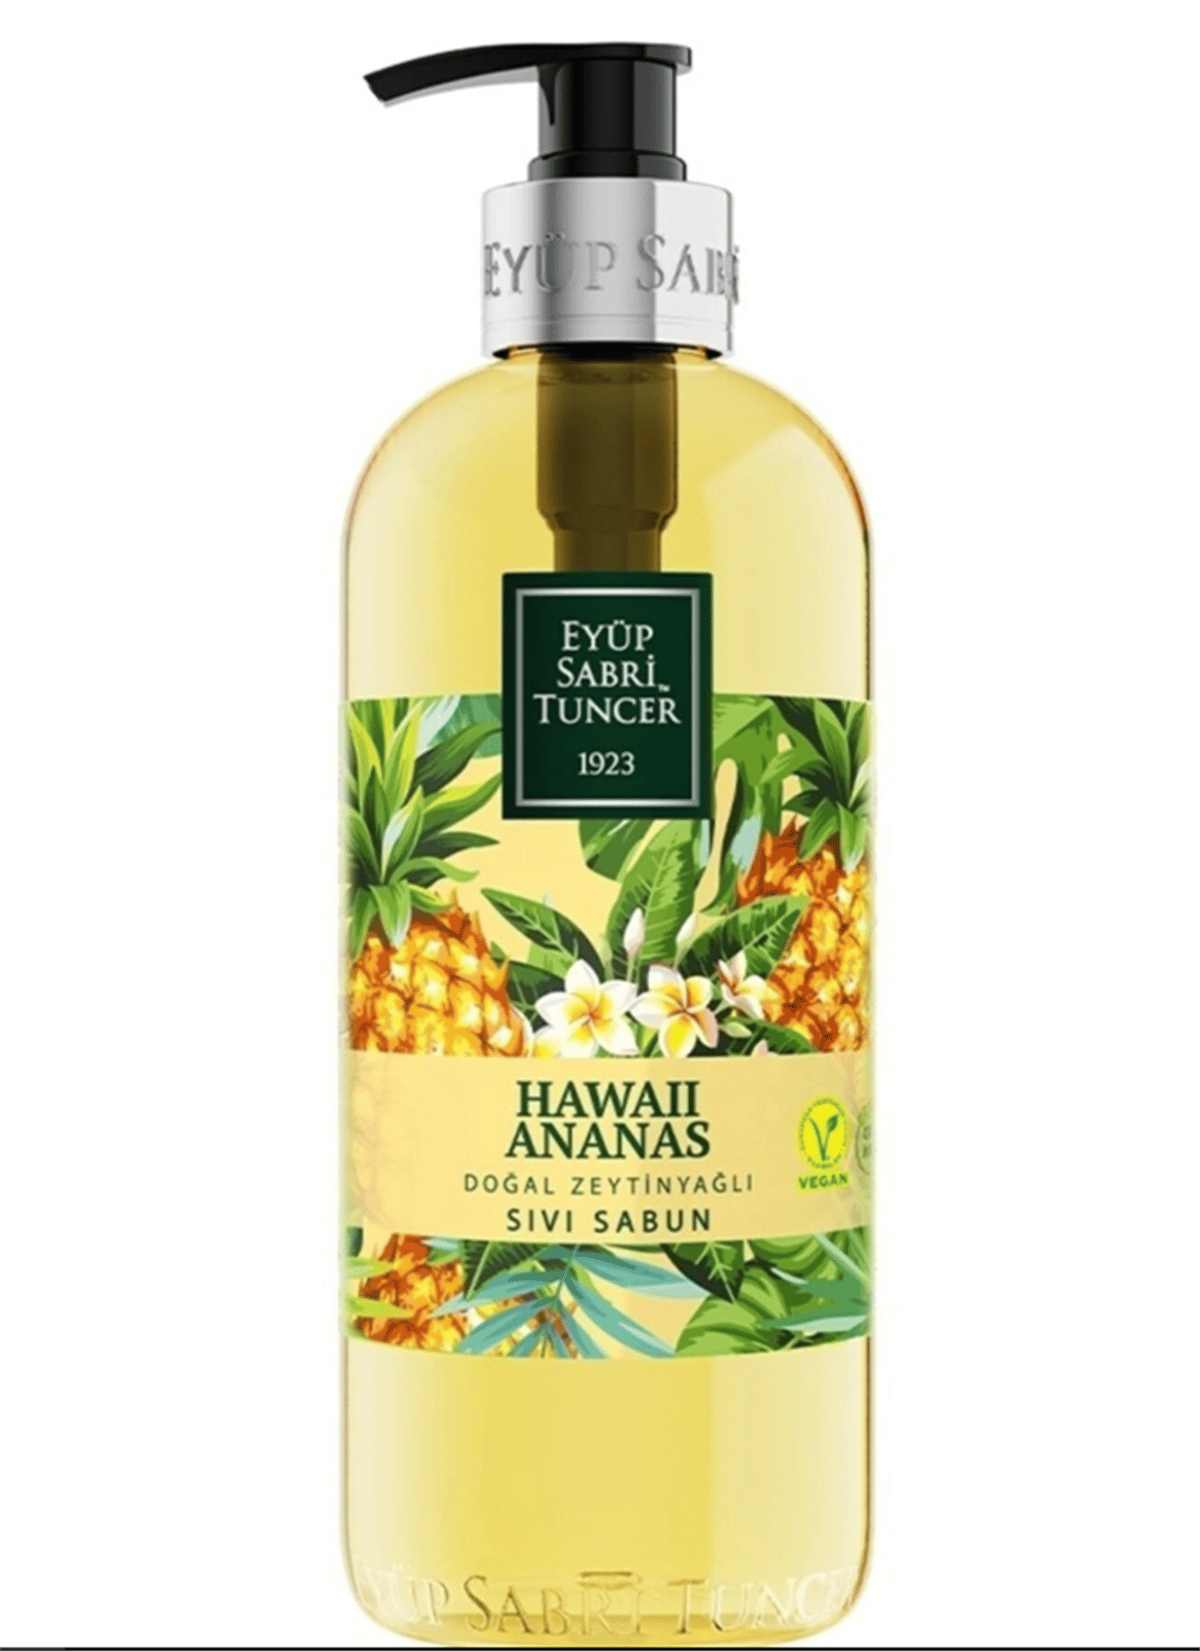 Eyüp Sabri Tuncer Sıvı Sabun Hawaii Ananas 500ml